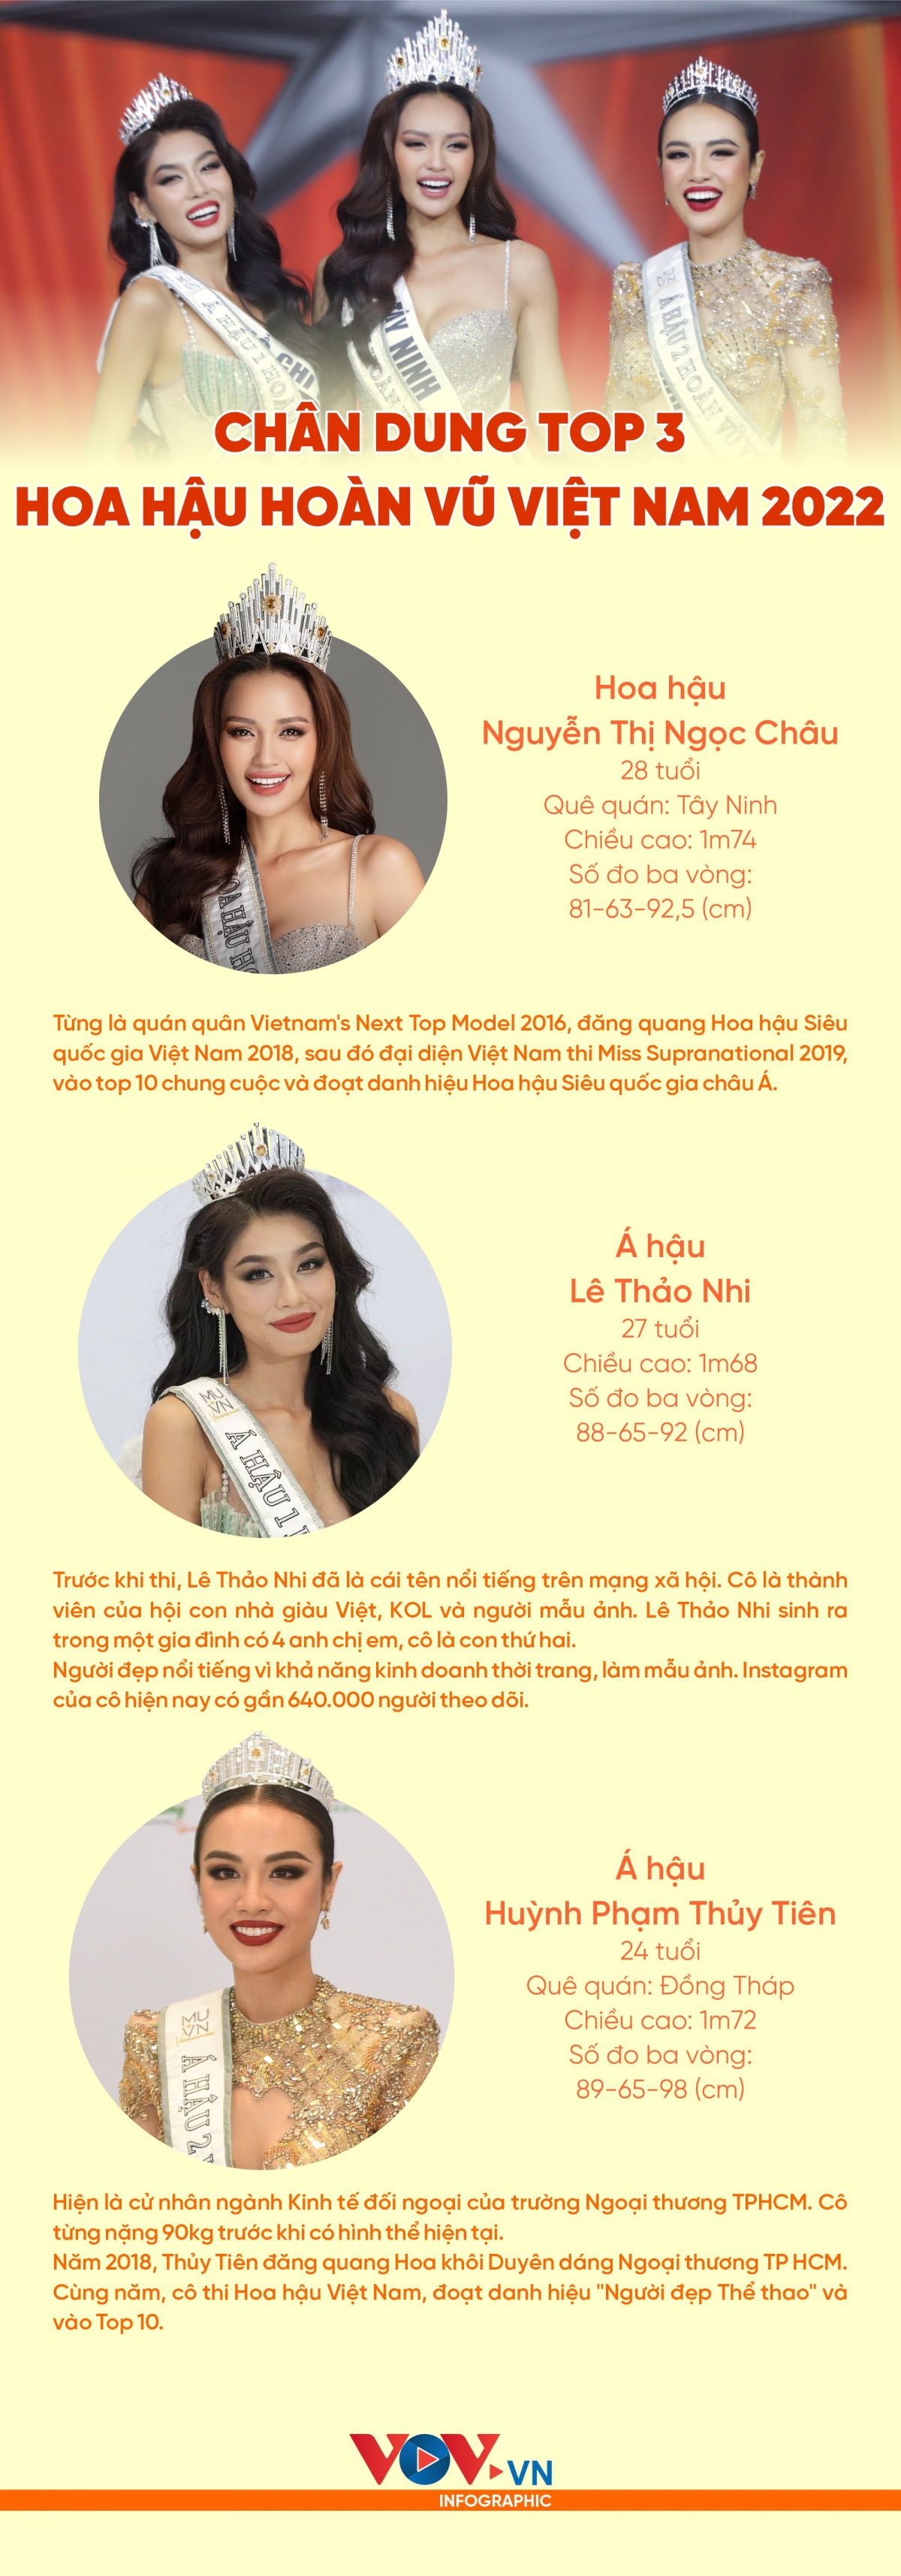 Chân dung Top 3 Hoa hậu Hoàn vũ Việt Nam 2022